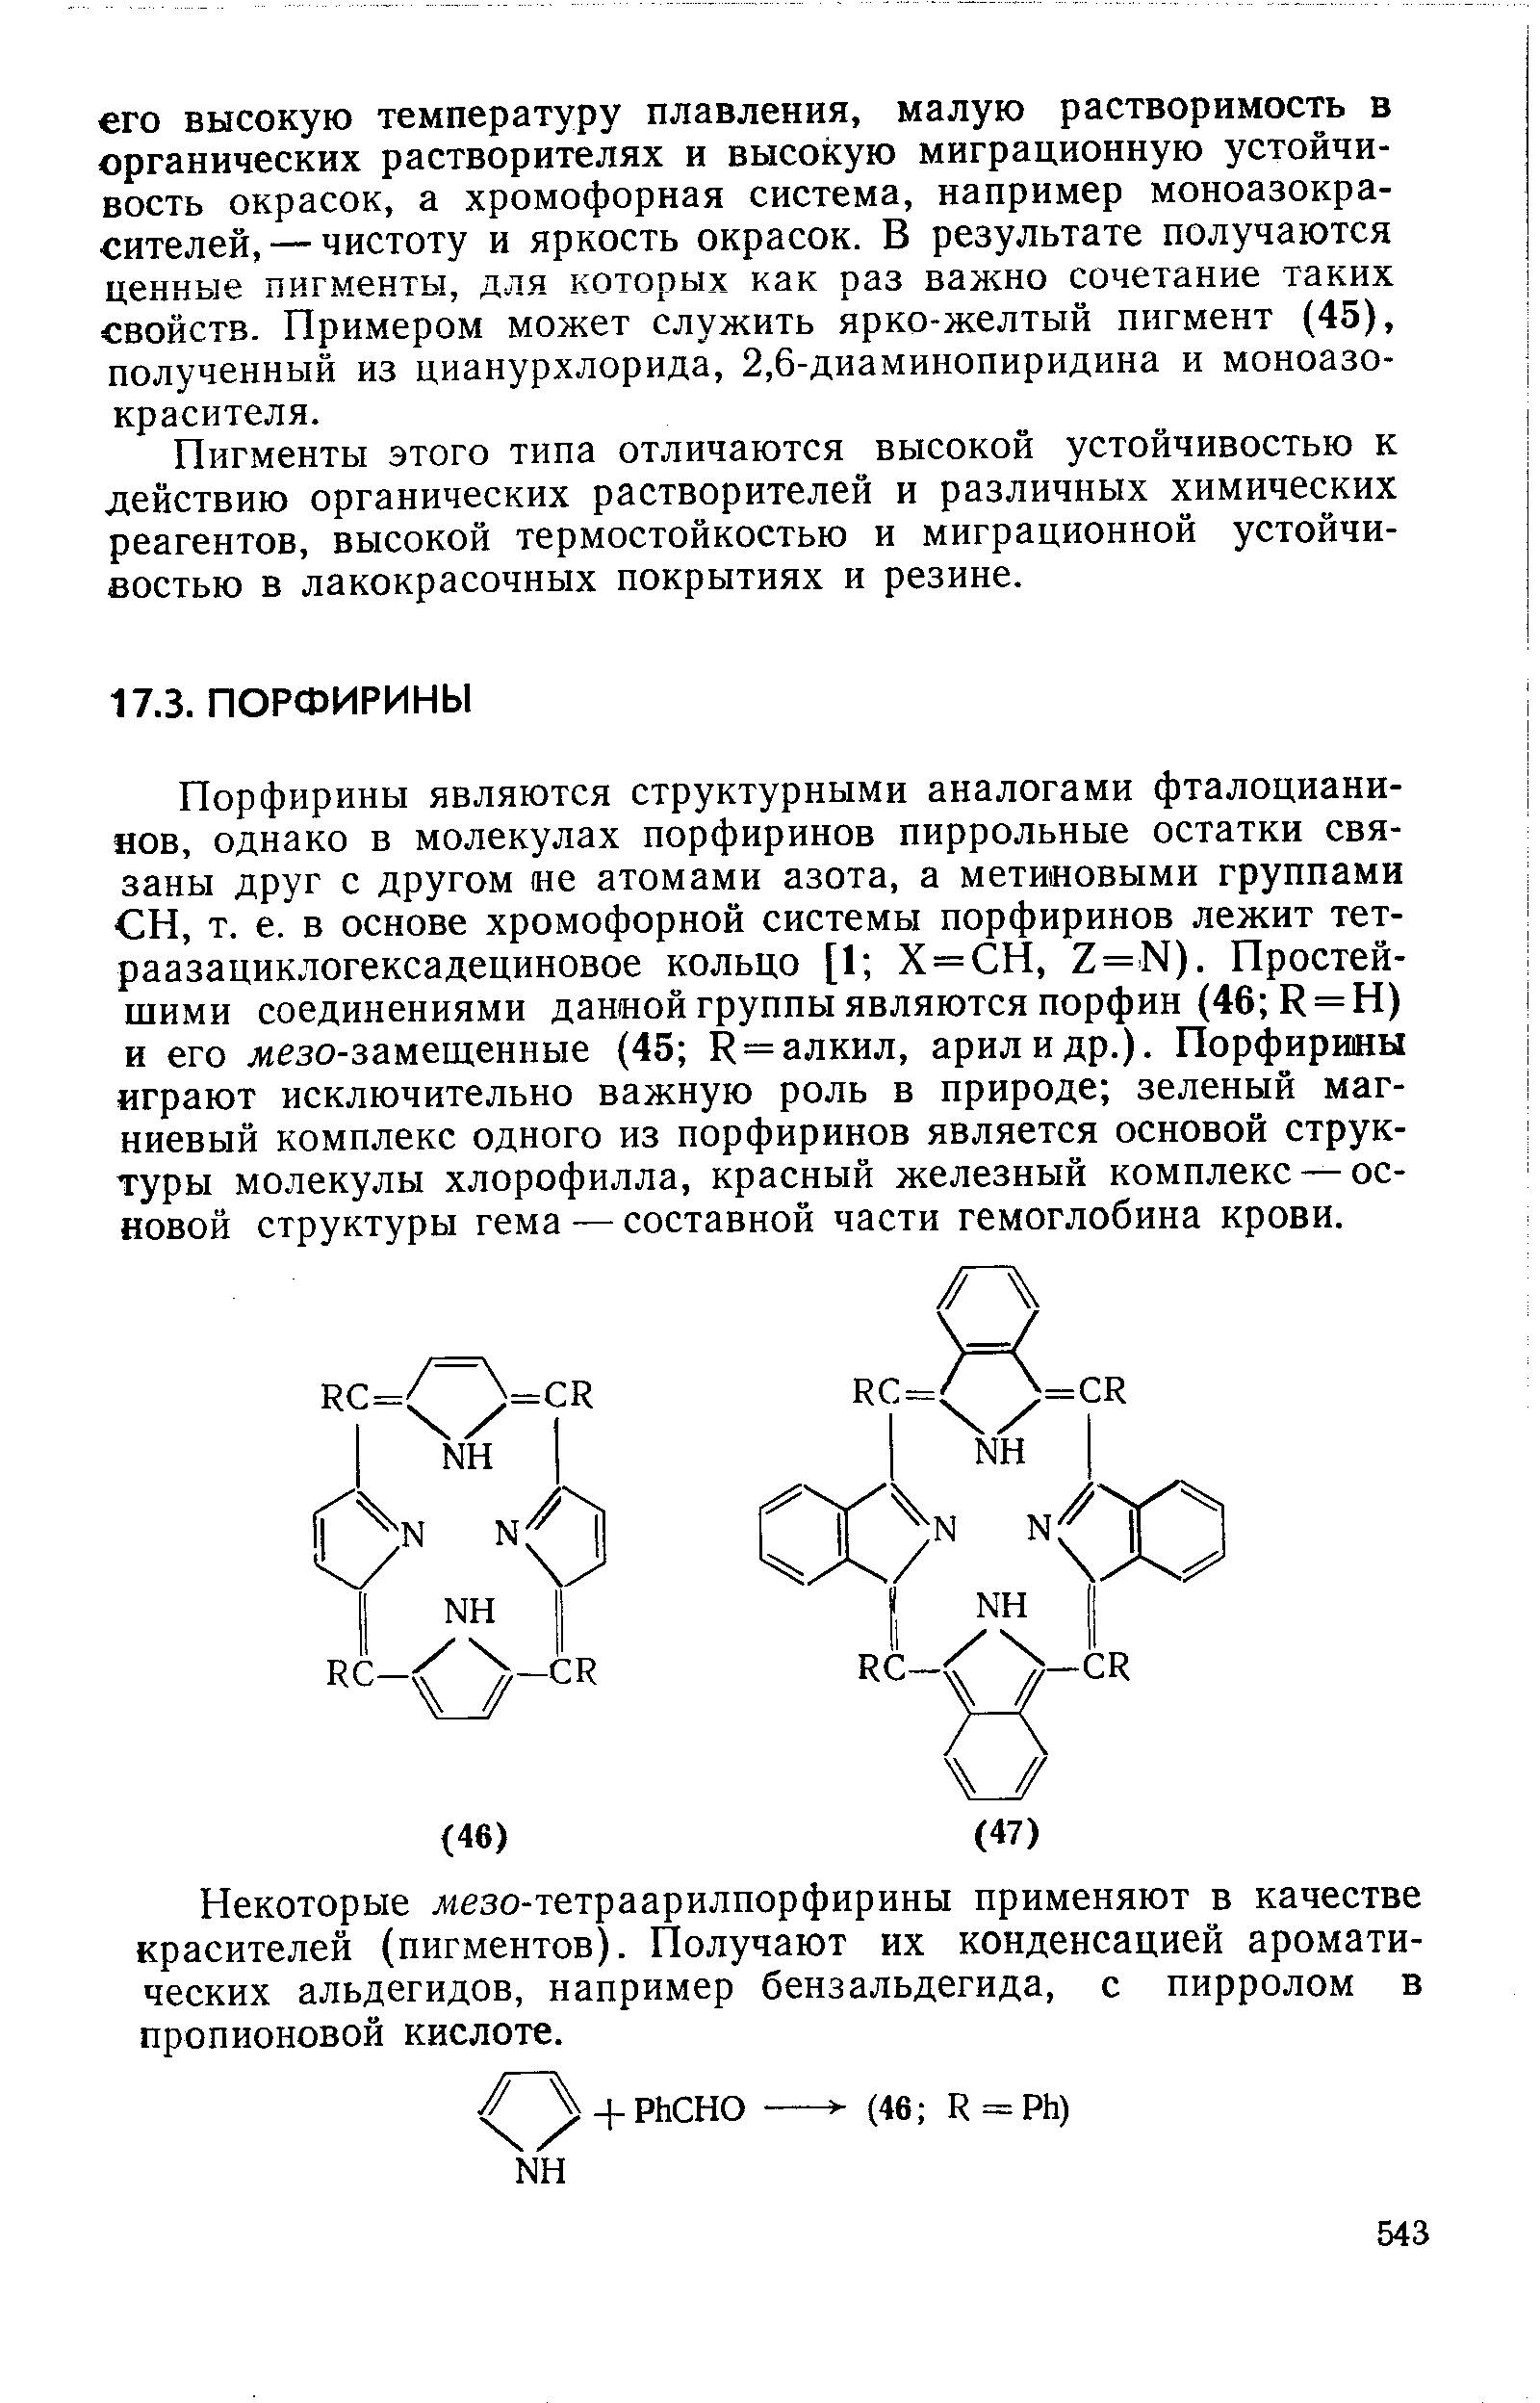 Порфирины являются структурными аналогами фталоциани-яов, однако в молекулах порфиринов пиррольные остатки связаны друг с другом ие атомами азота, а метиновыми группами СН, т. е. в основе хромофорной системы порфиринов лежит тет-раазациклогексадециновое кольцо [1 Х = СН, 7 = Ы). Простейшими соединениями данной группы являются порфин (46 К = Н) и его жезо-замещенные (45 К = алкил, арил и др.). Порфирины играют исключительно важную роль в природе зеленый магниевый комплекс одного из порфиринов является основой структуры молекулы хлорофилла, красный железный комплекс — основой структуры гема — составной части гемоглобина крови.